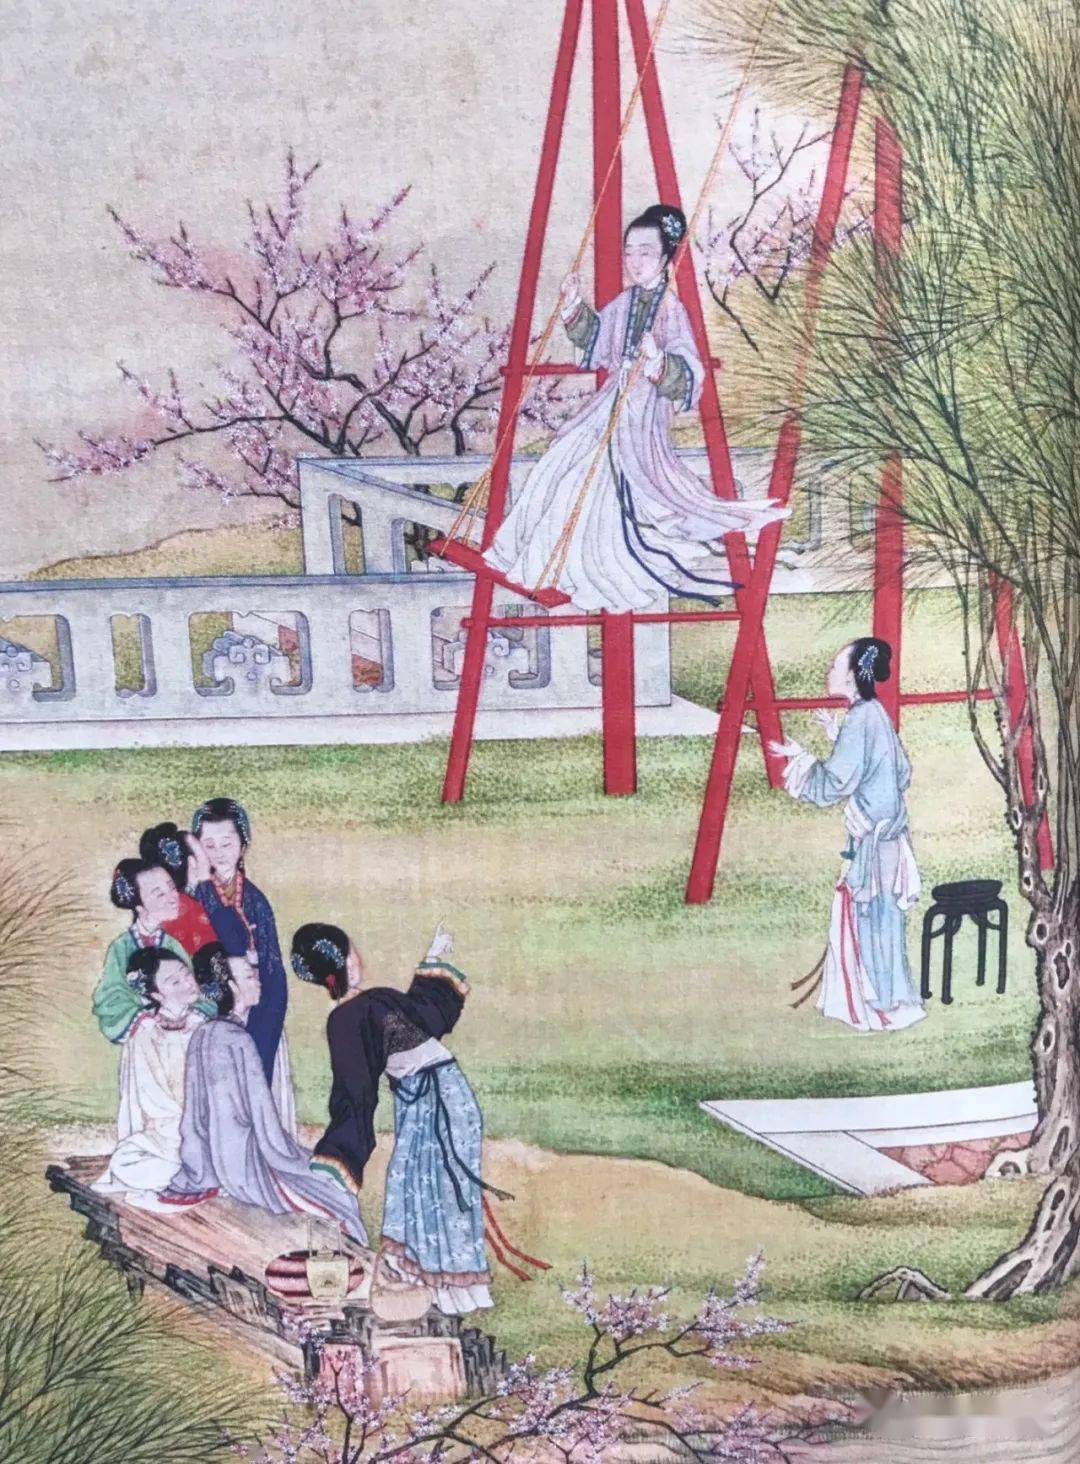 荡秋千是中国古代清明节习俗之一,盛行于唐代